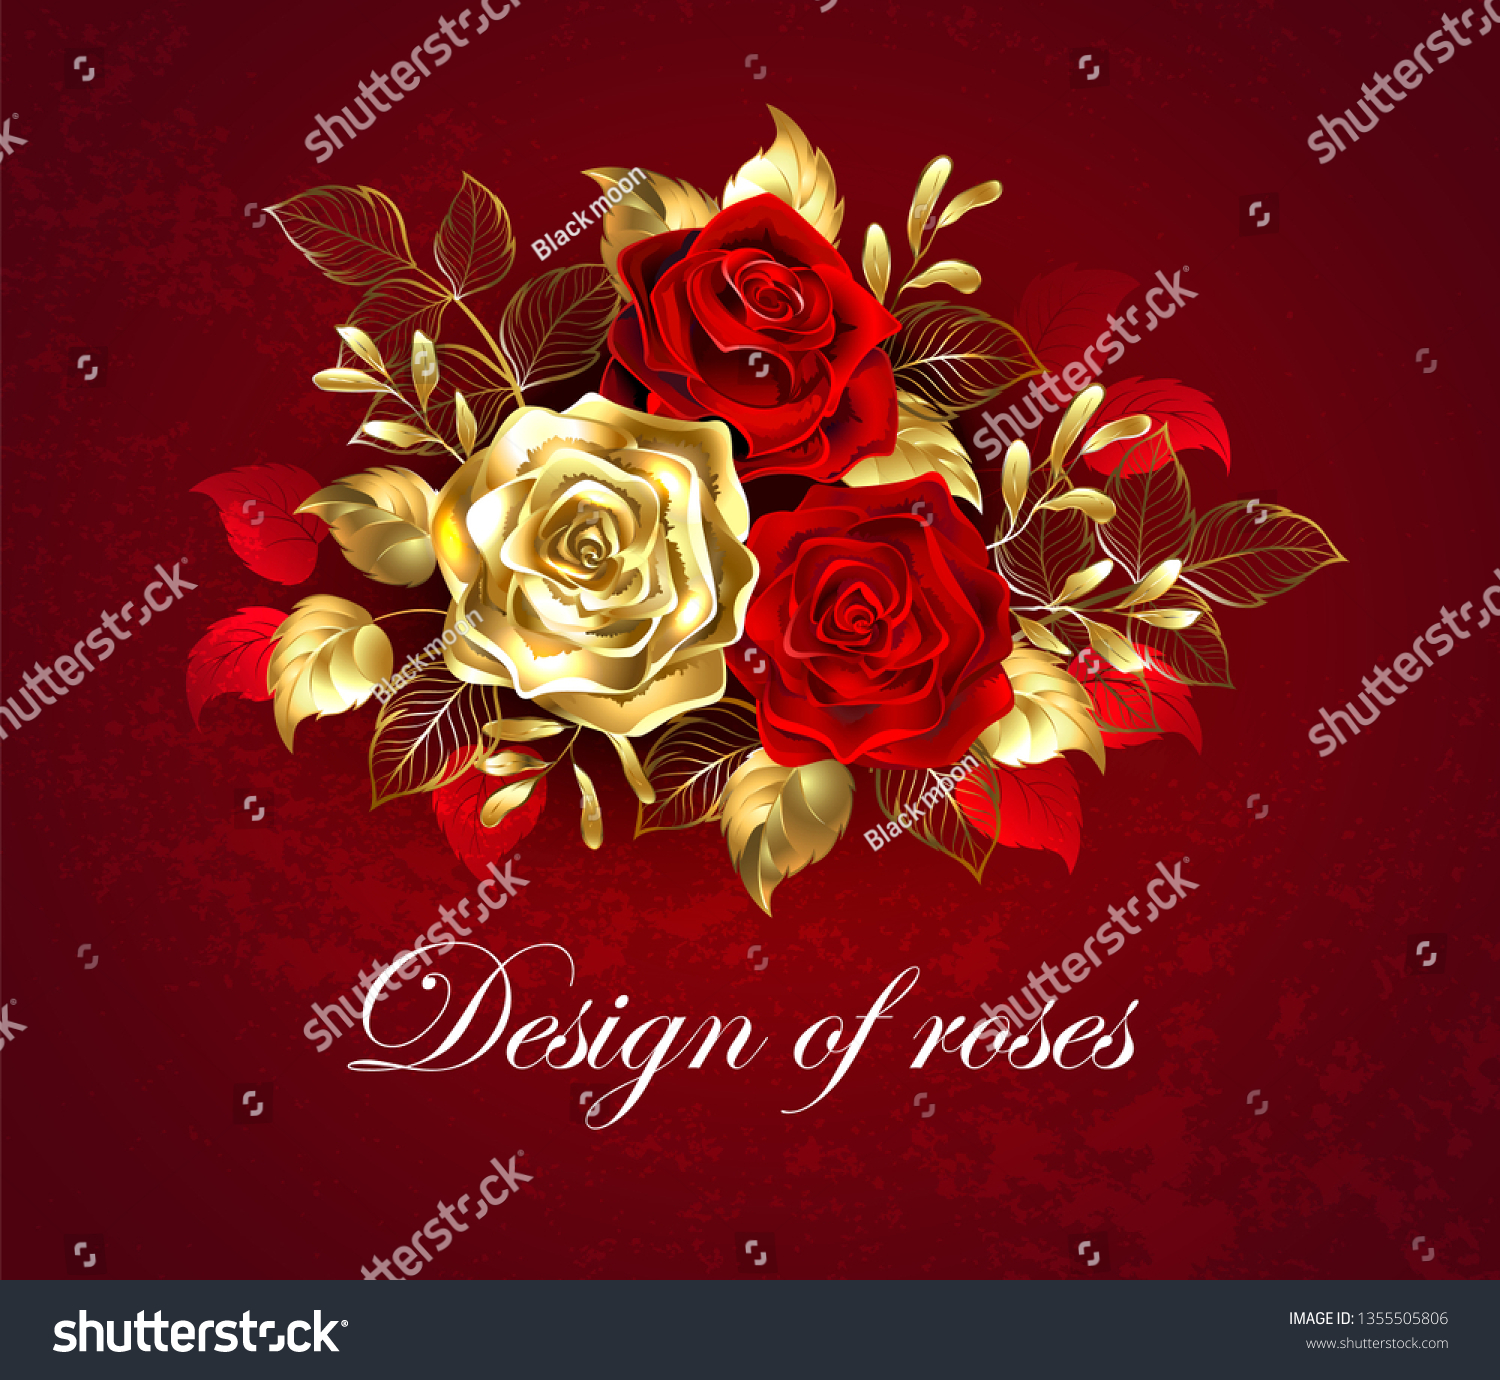 テクスチャーのある背景に金 宝石の葉で飾られた2本の芸術的に塗られた赤いバラと1本の金色のバラの組成 のベクター画像素材 ロイヤリティフリー